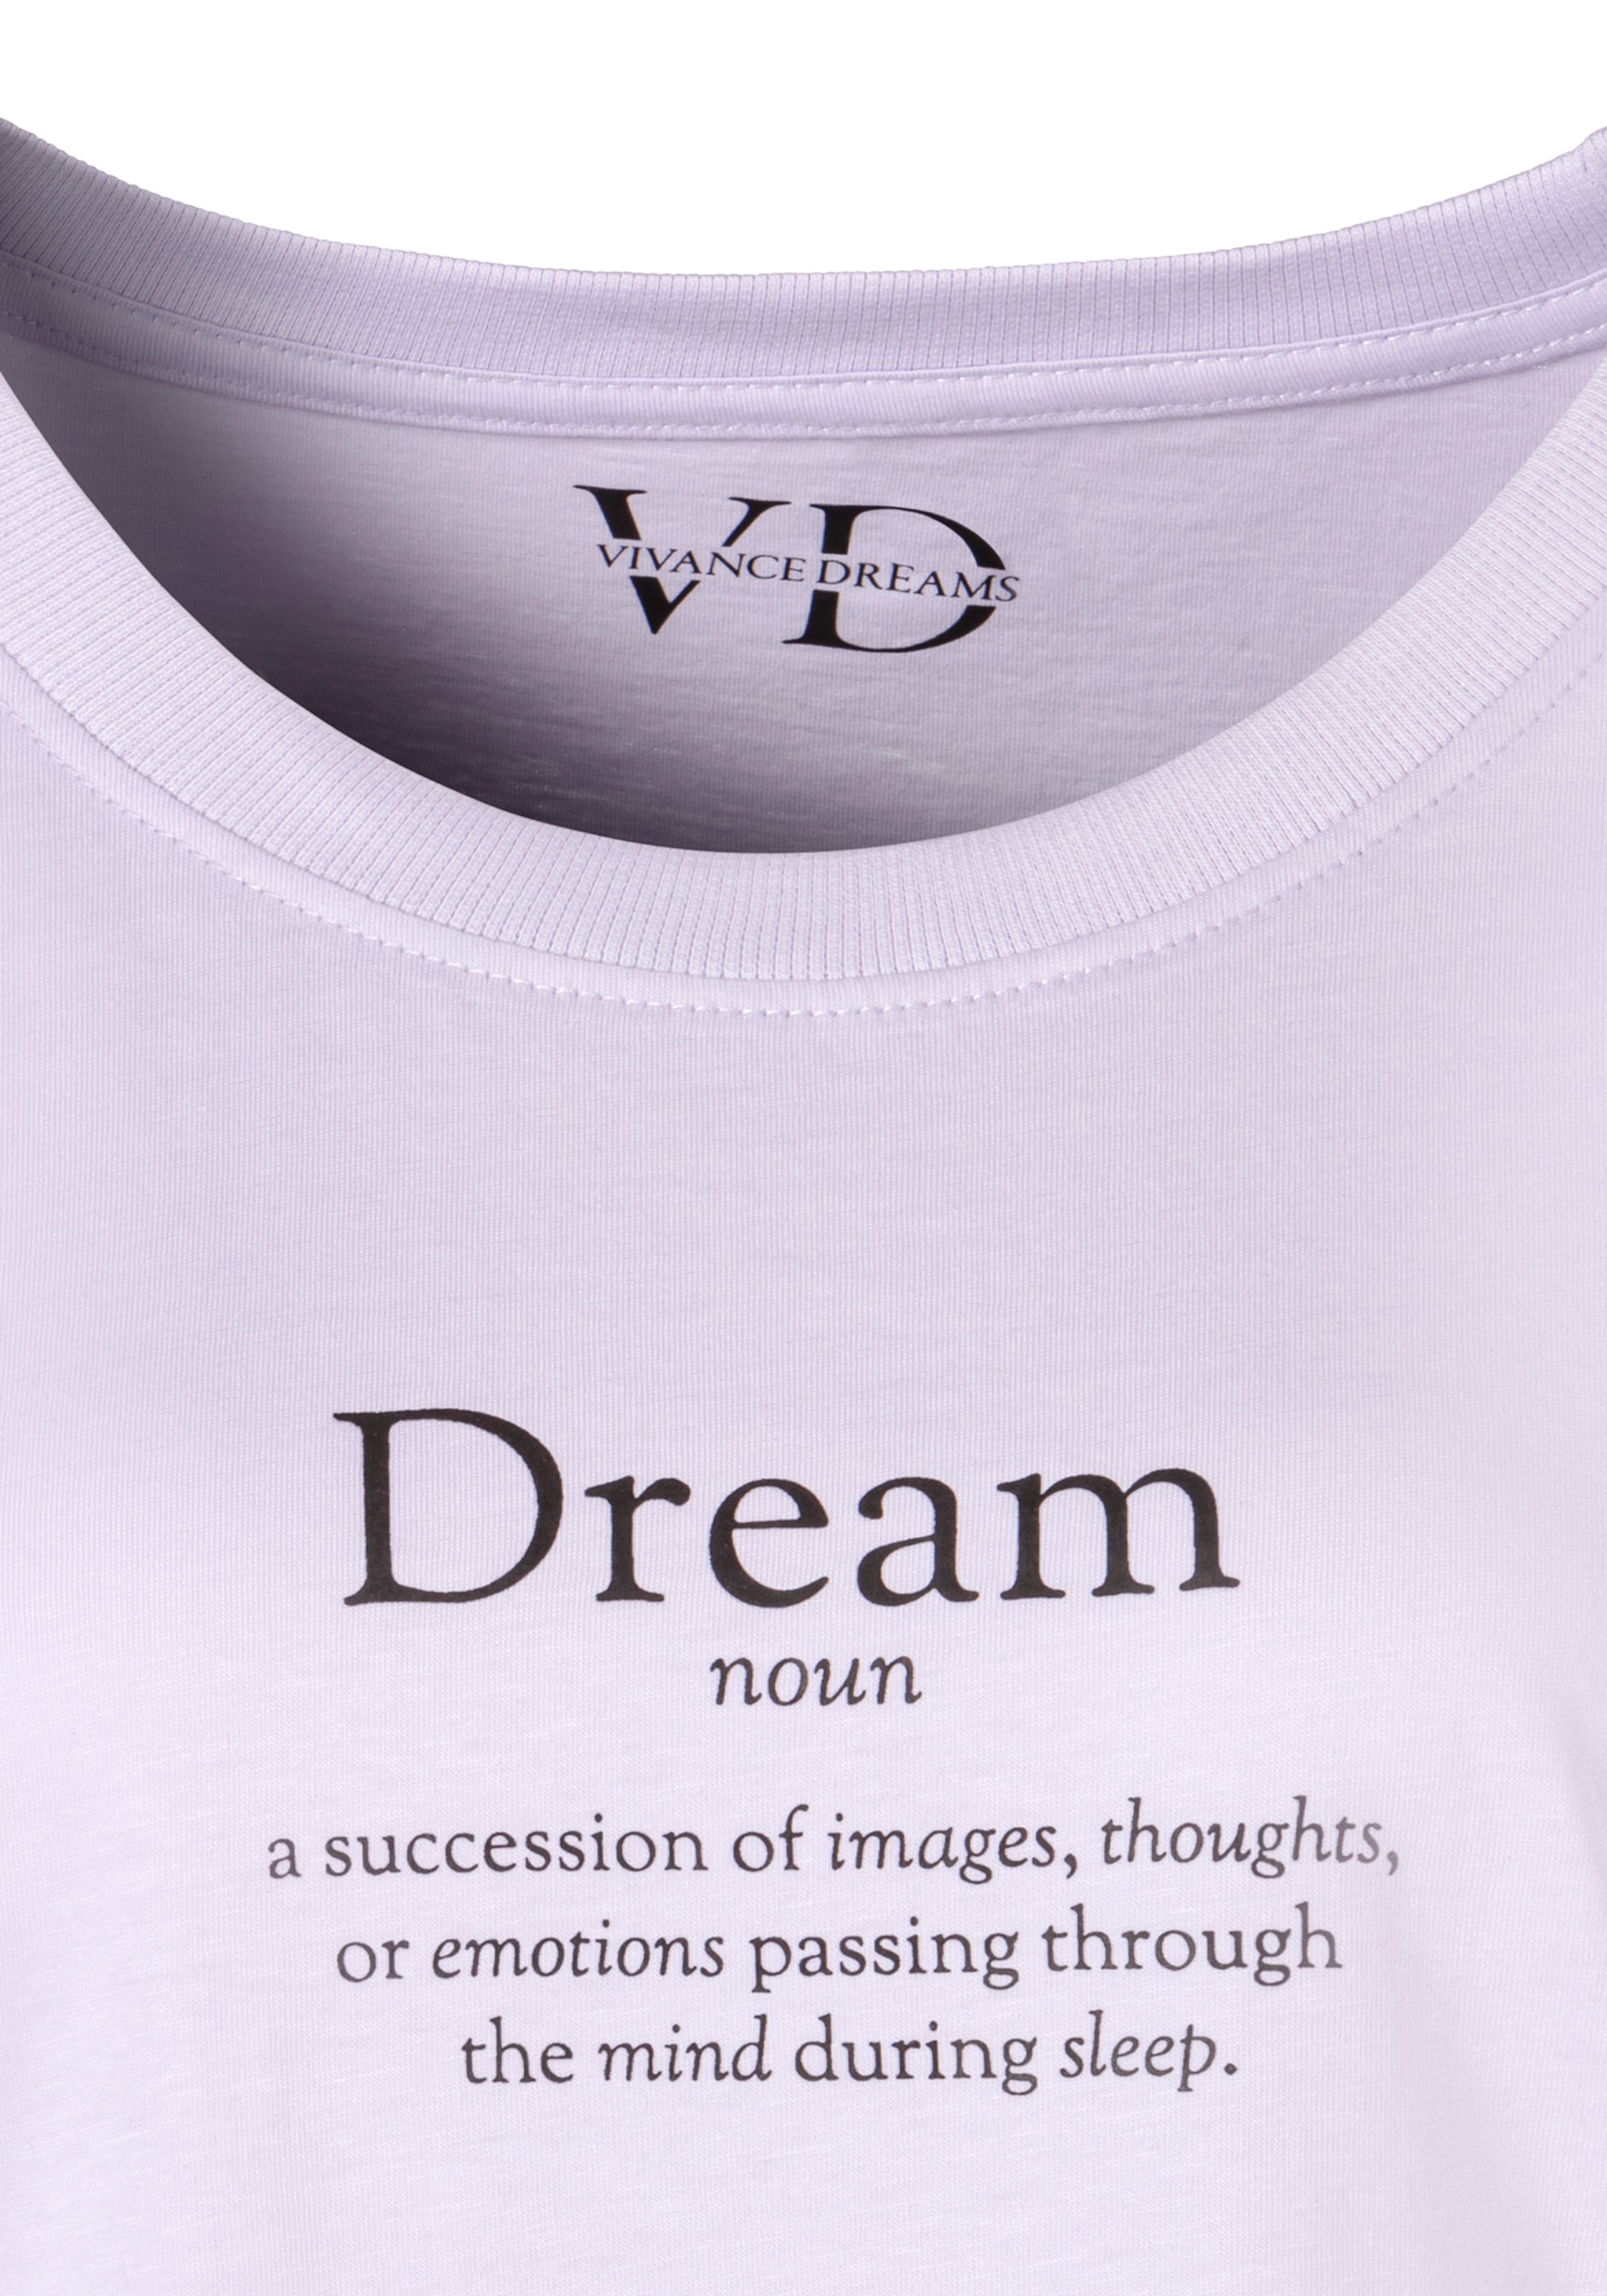 bestellen Dreams Vivance online Pyjamaoberteil, BAUR | mit Statementdruck